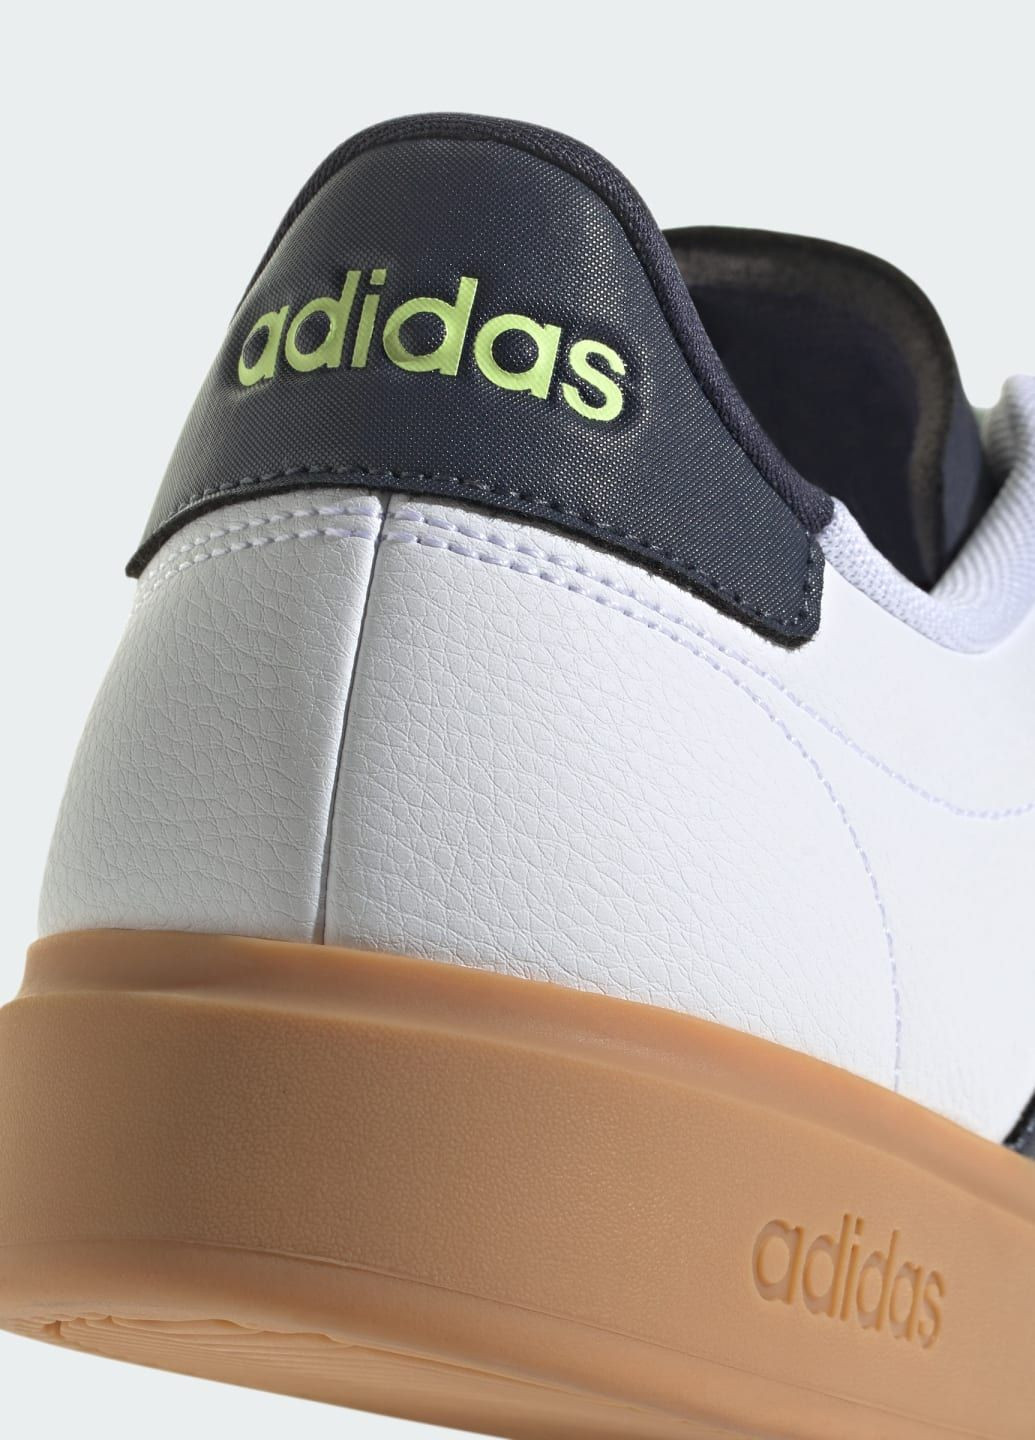 Білі всесезон кросівки grand court 2.0 adidas